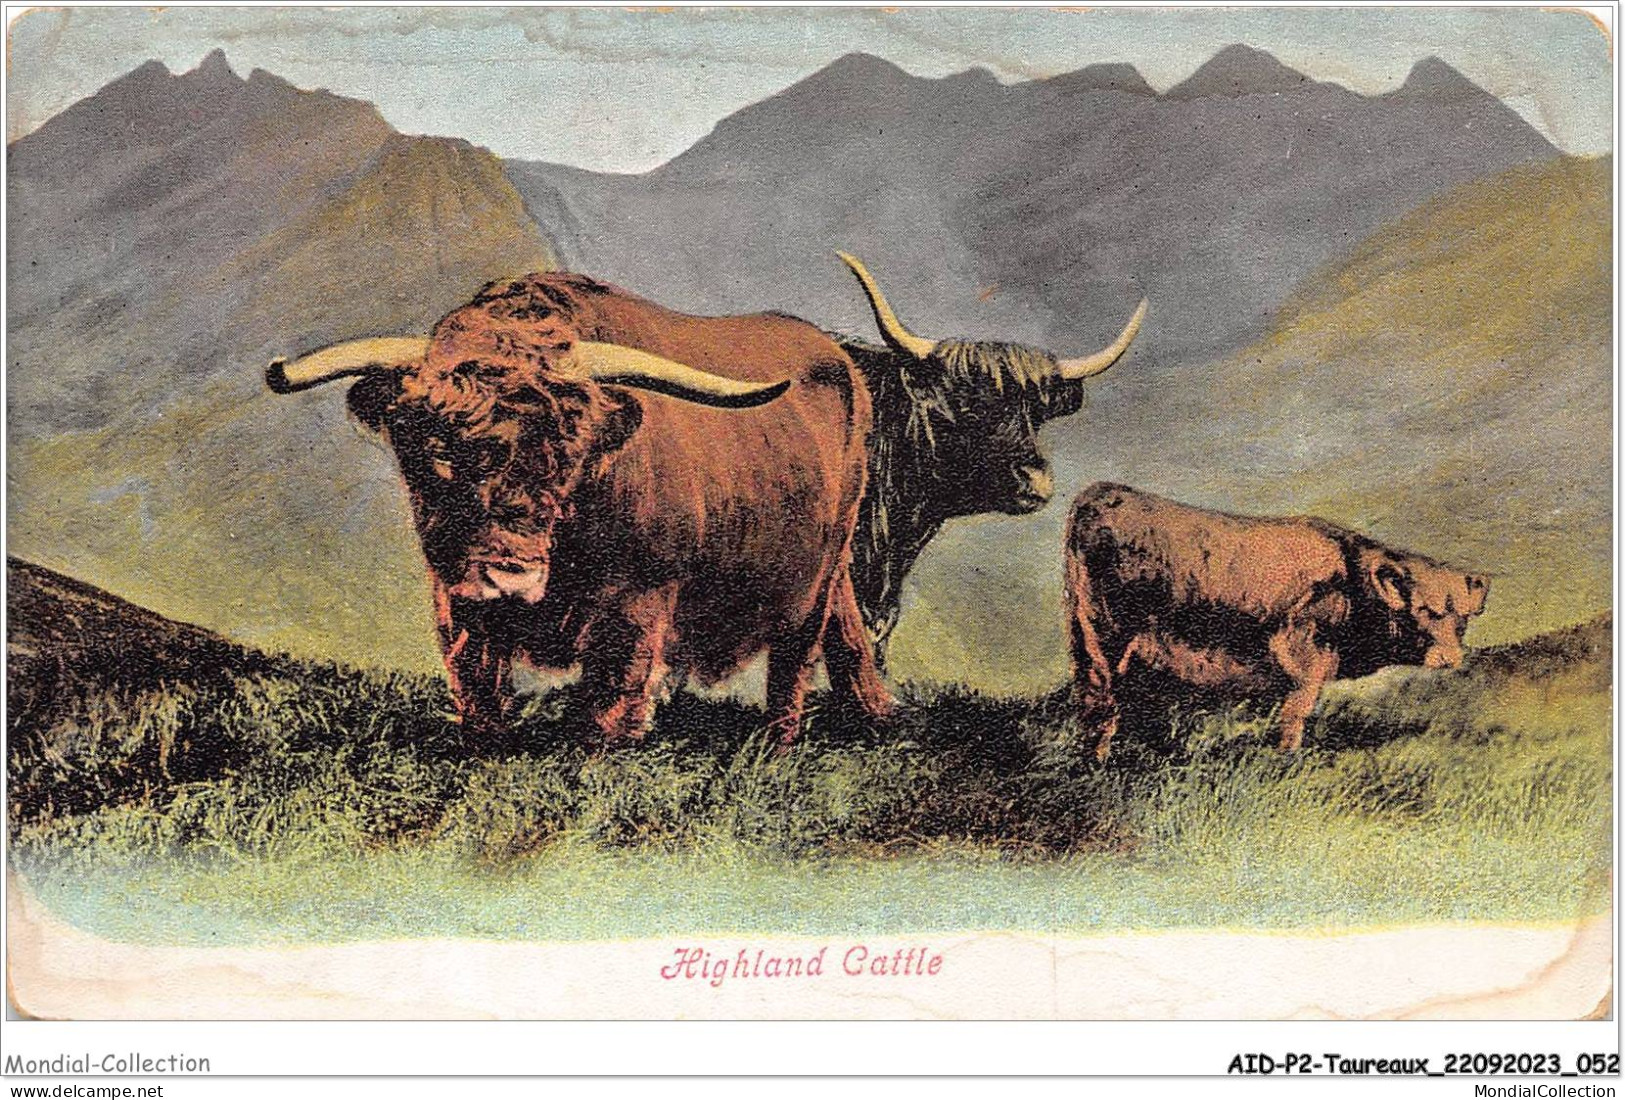 AIDP2-TAUREAUX-0100 - Highland Cattle  - Toros